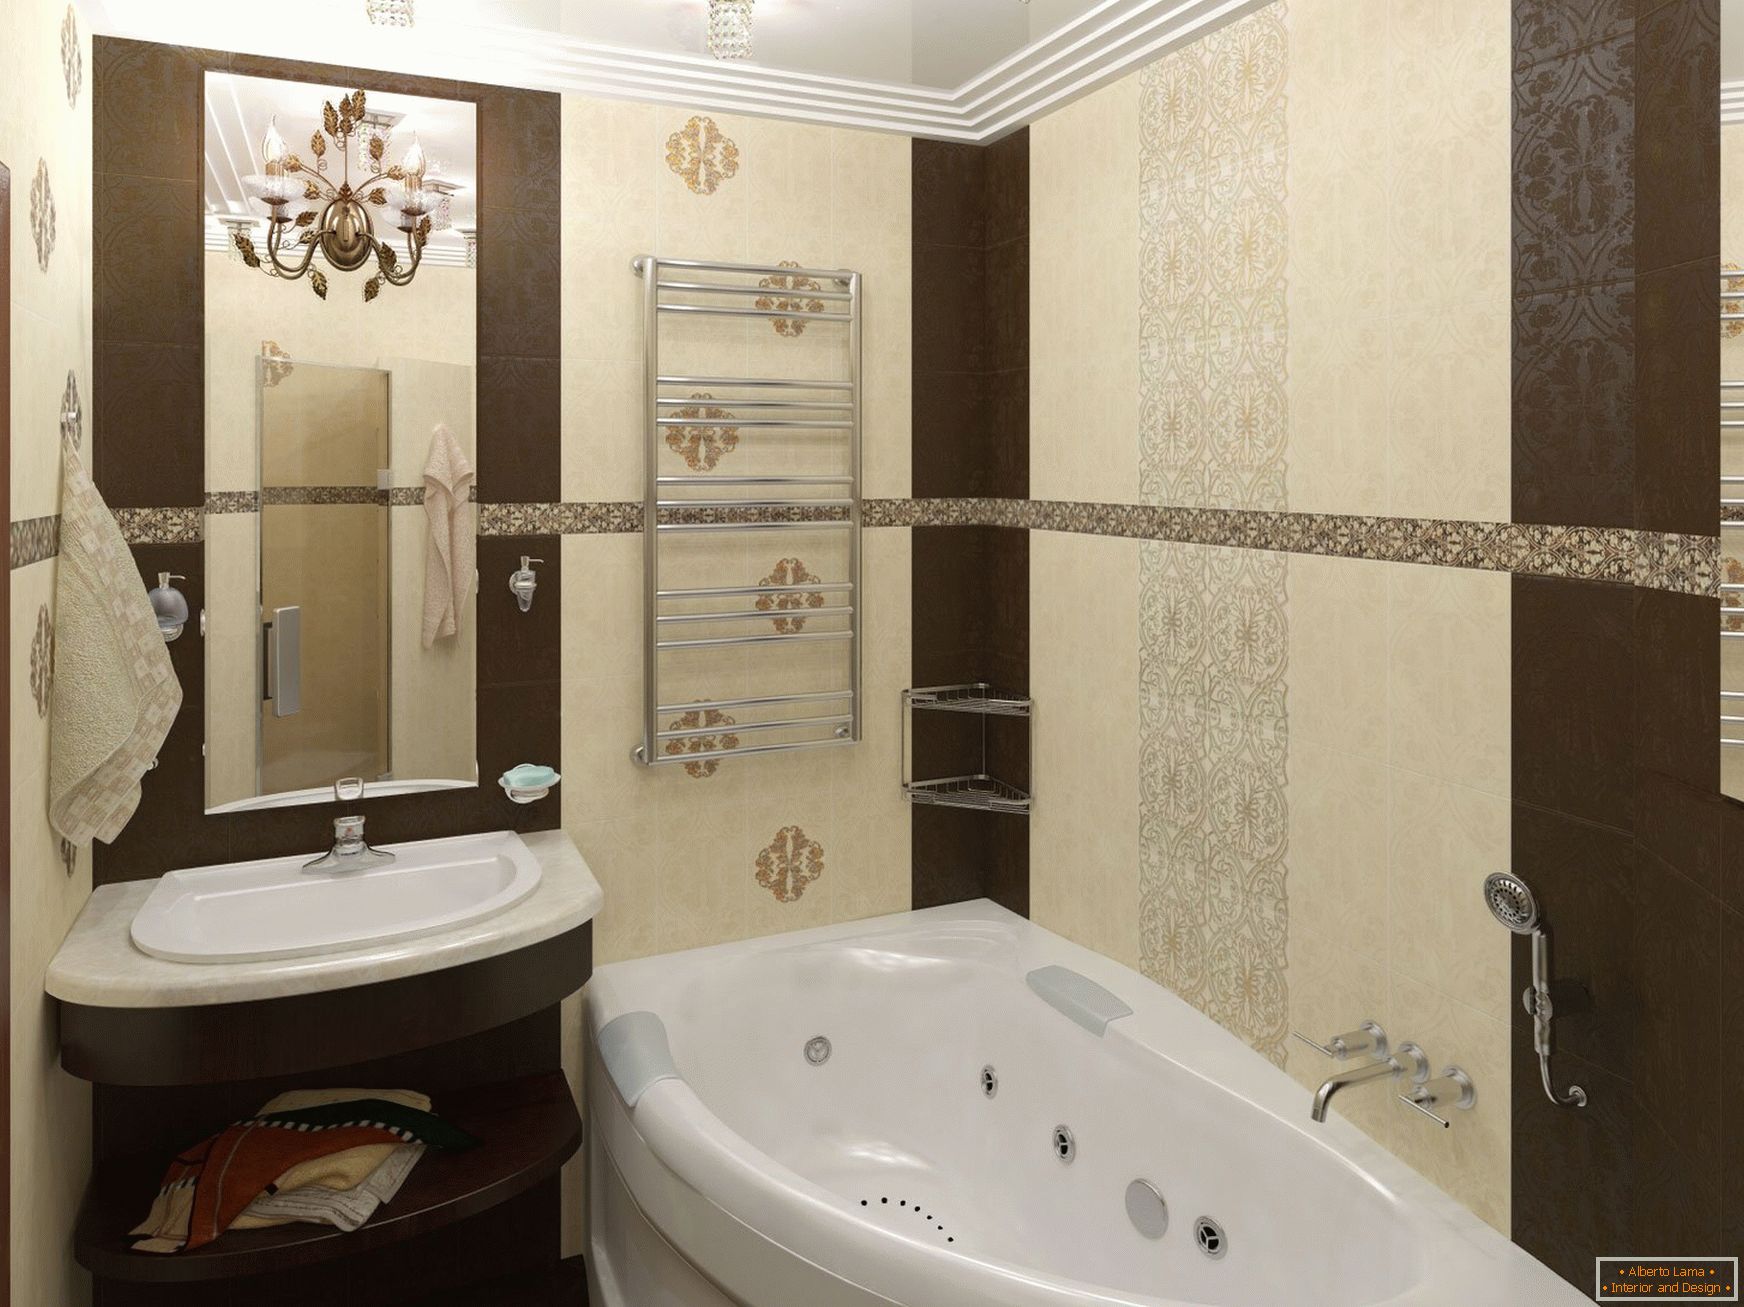 Entwurf eines schmalen Badezimmers in den beige Schokoladenfarben